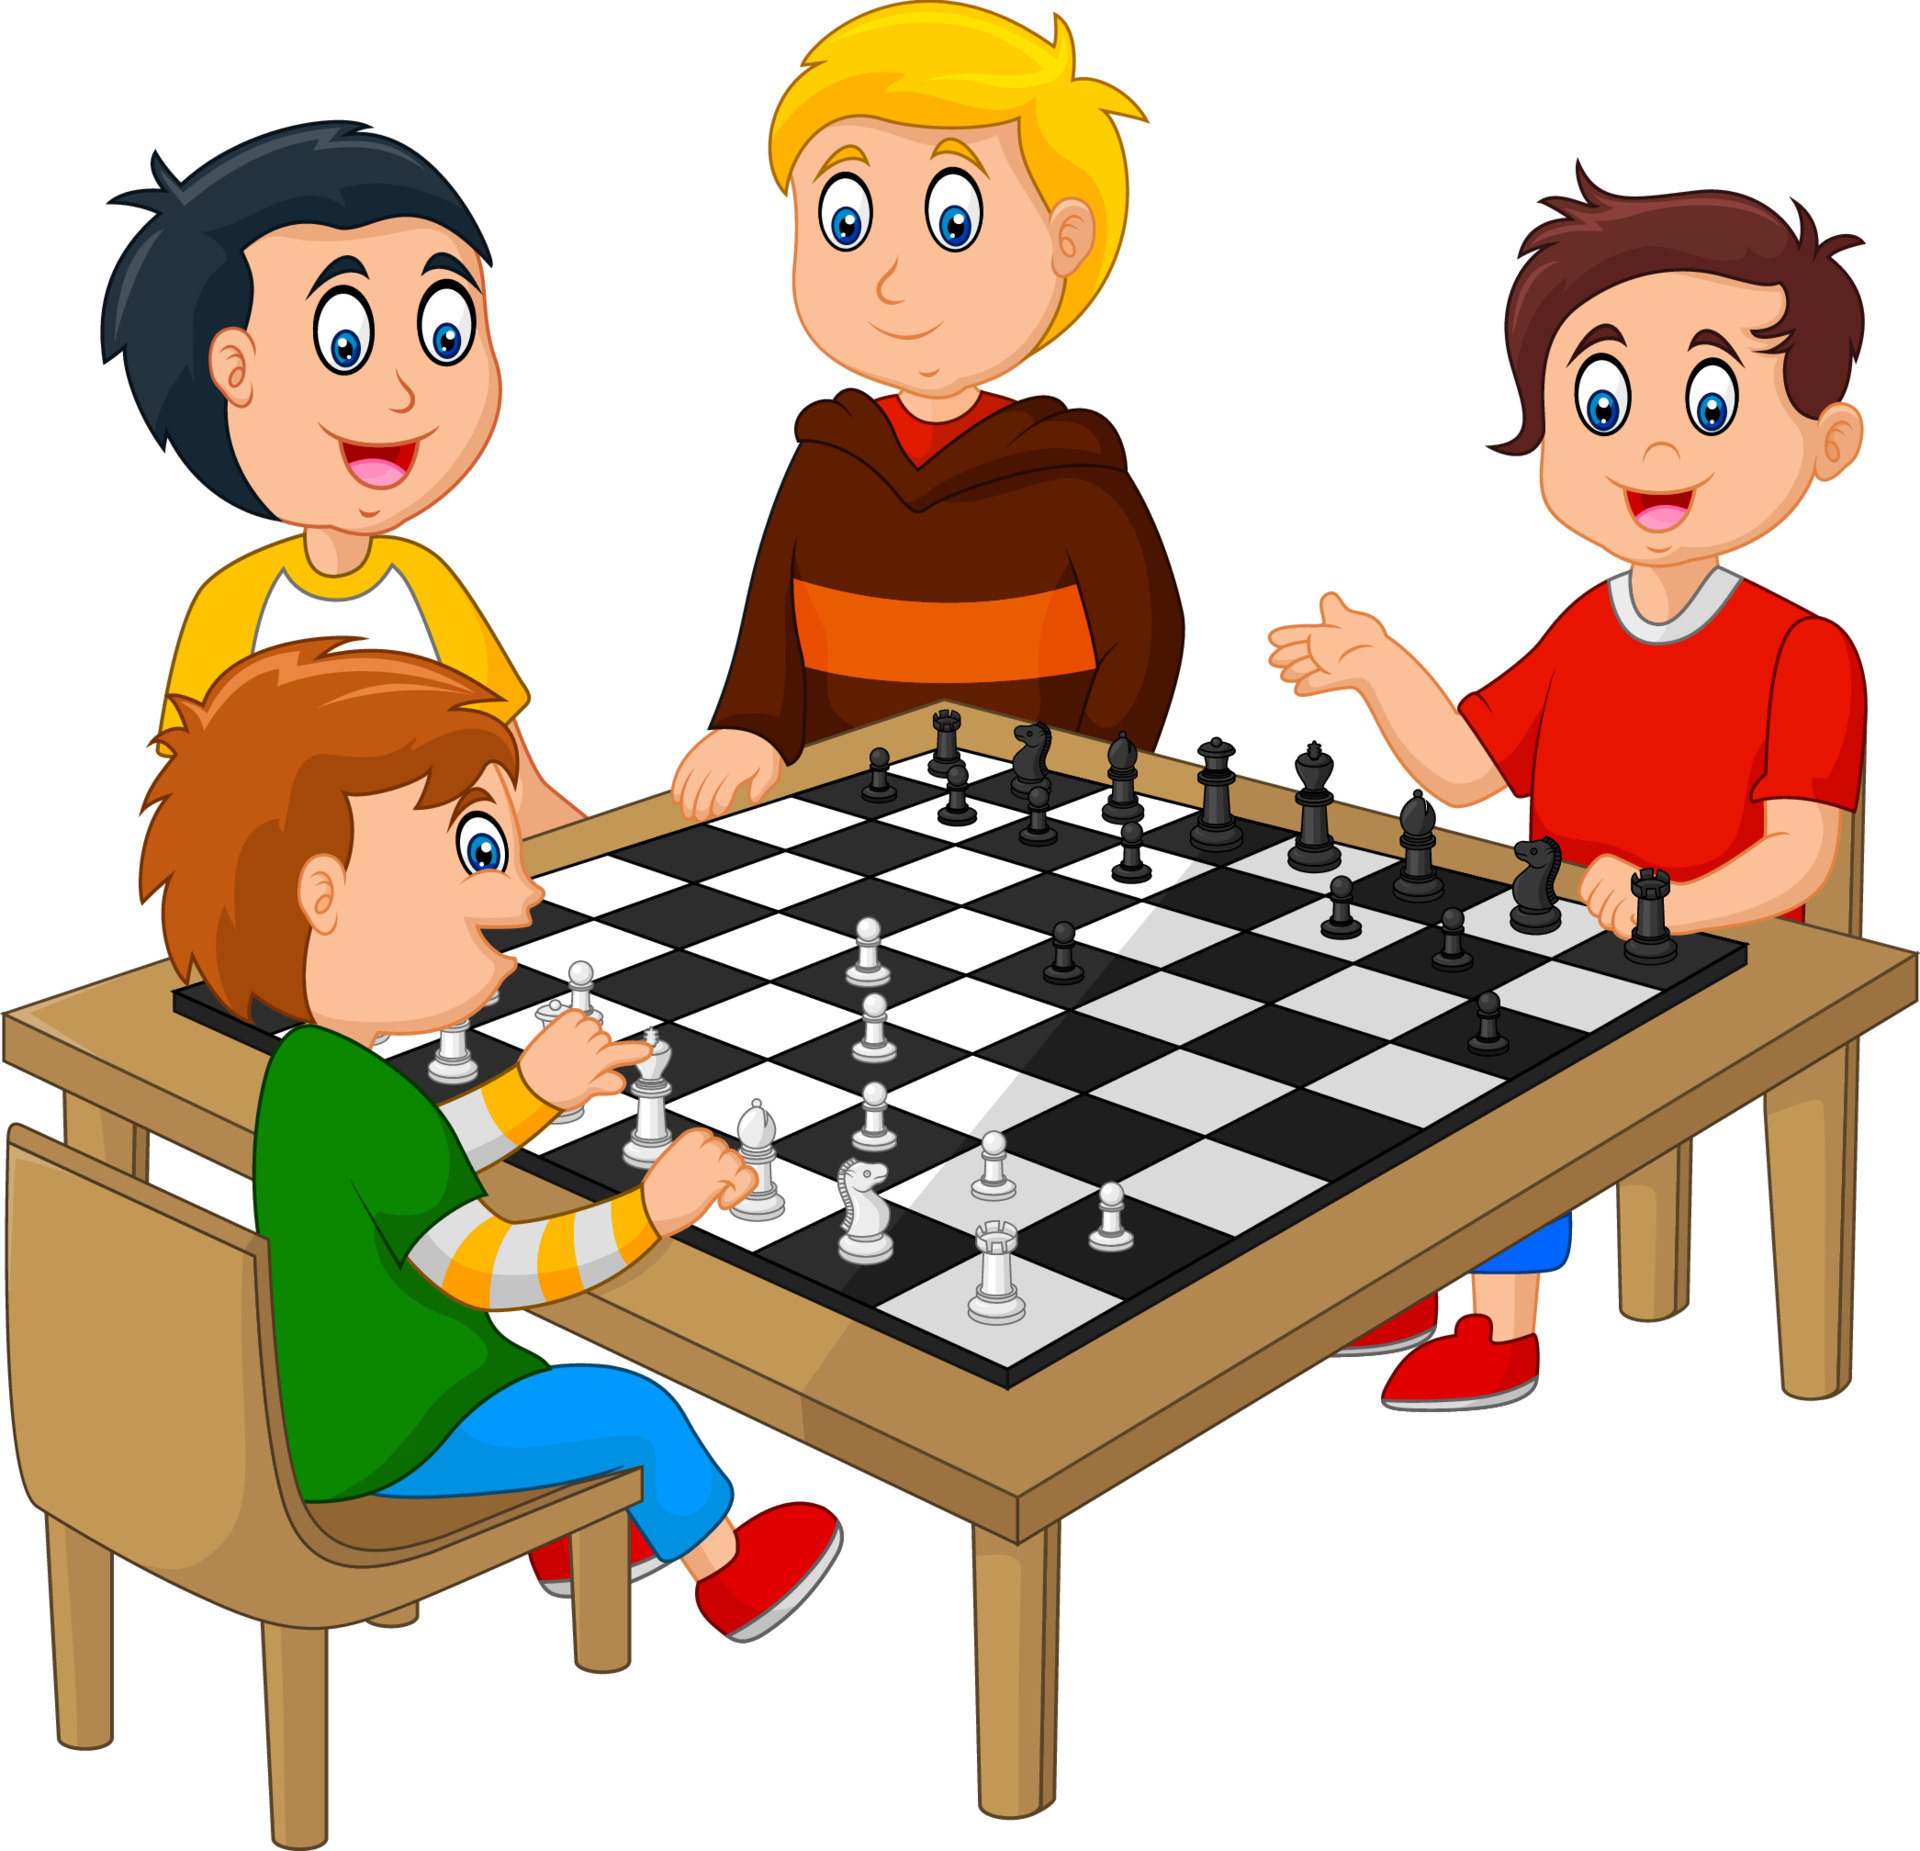 família jogando xadrez chinês (xiang qi) 903222 Foto de stock no Vecteezy